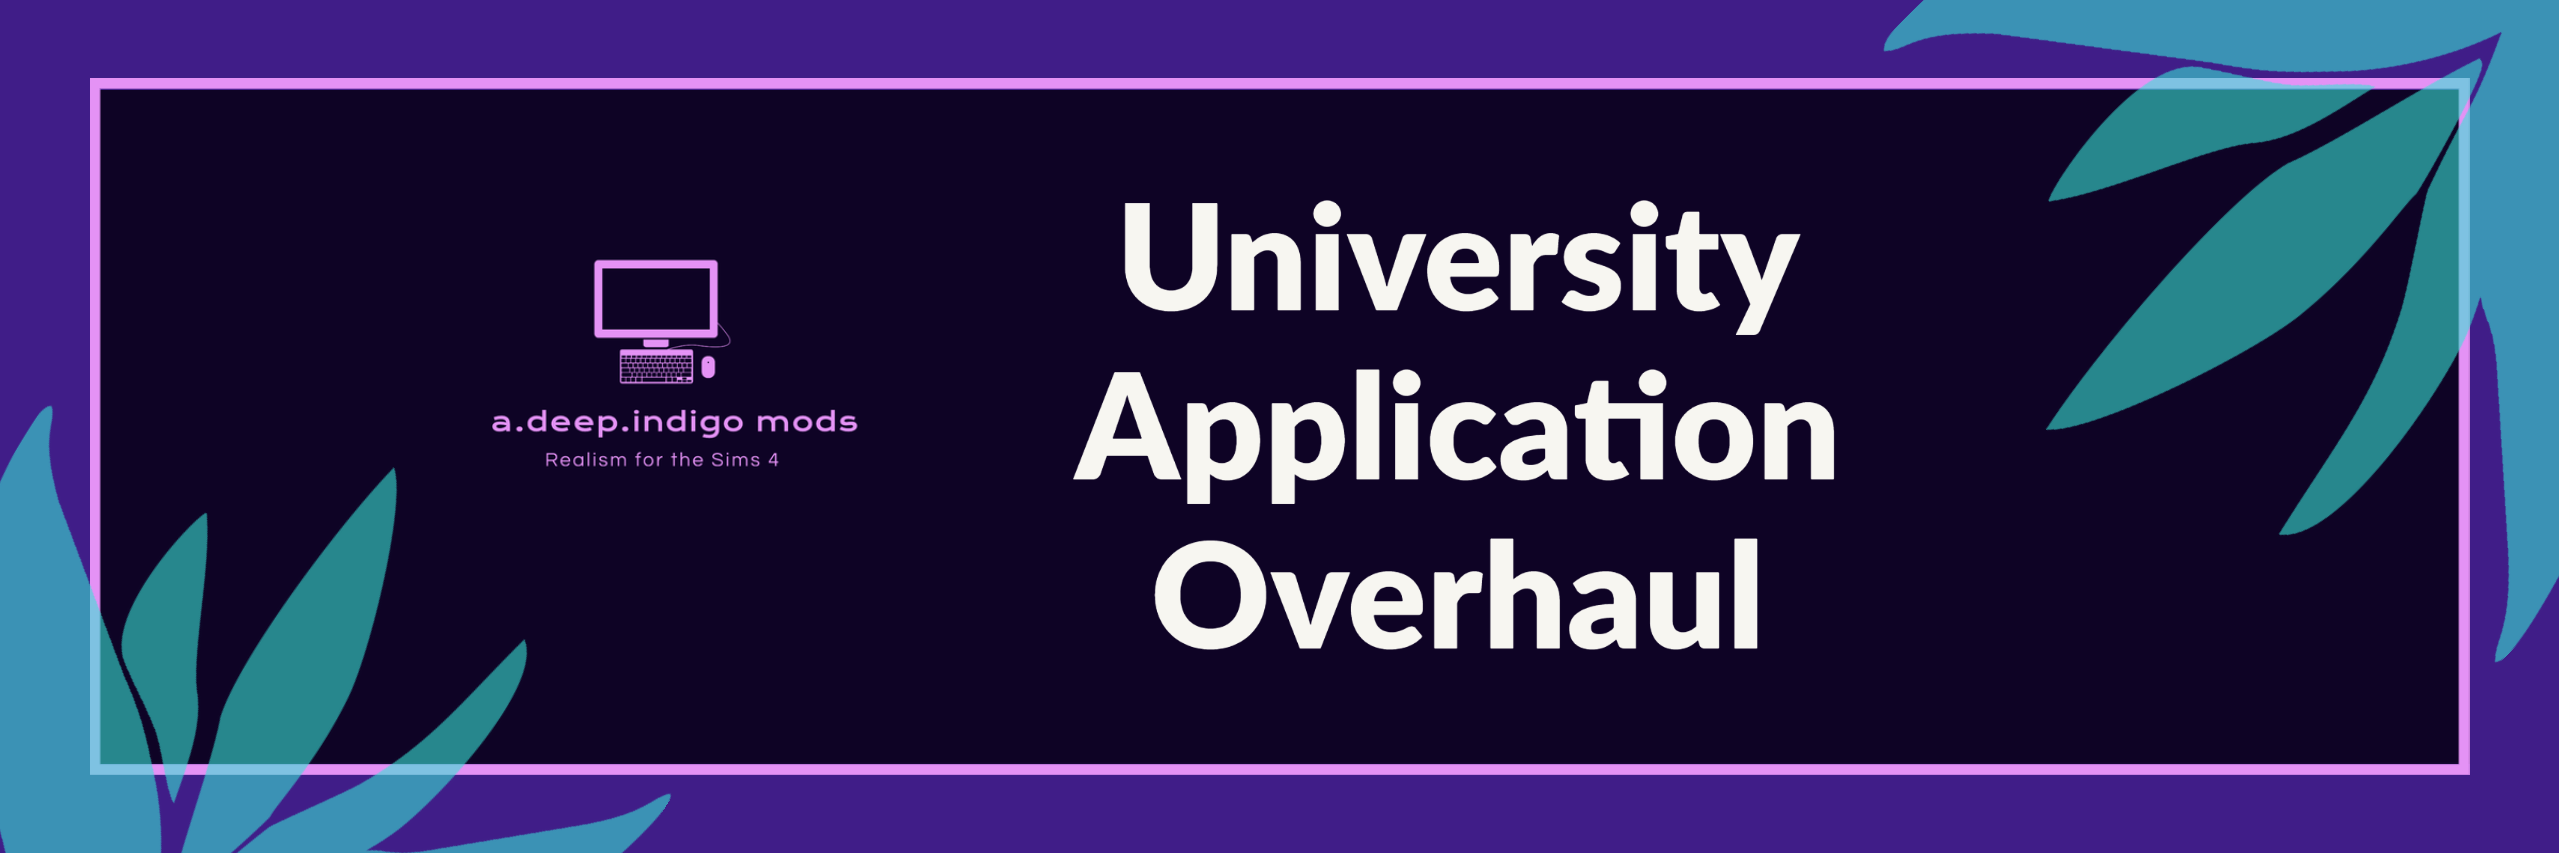 University Application Overhaul